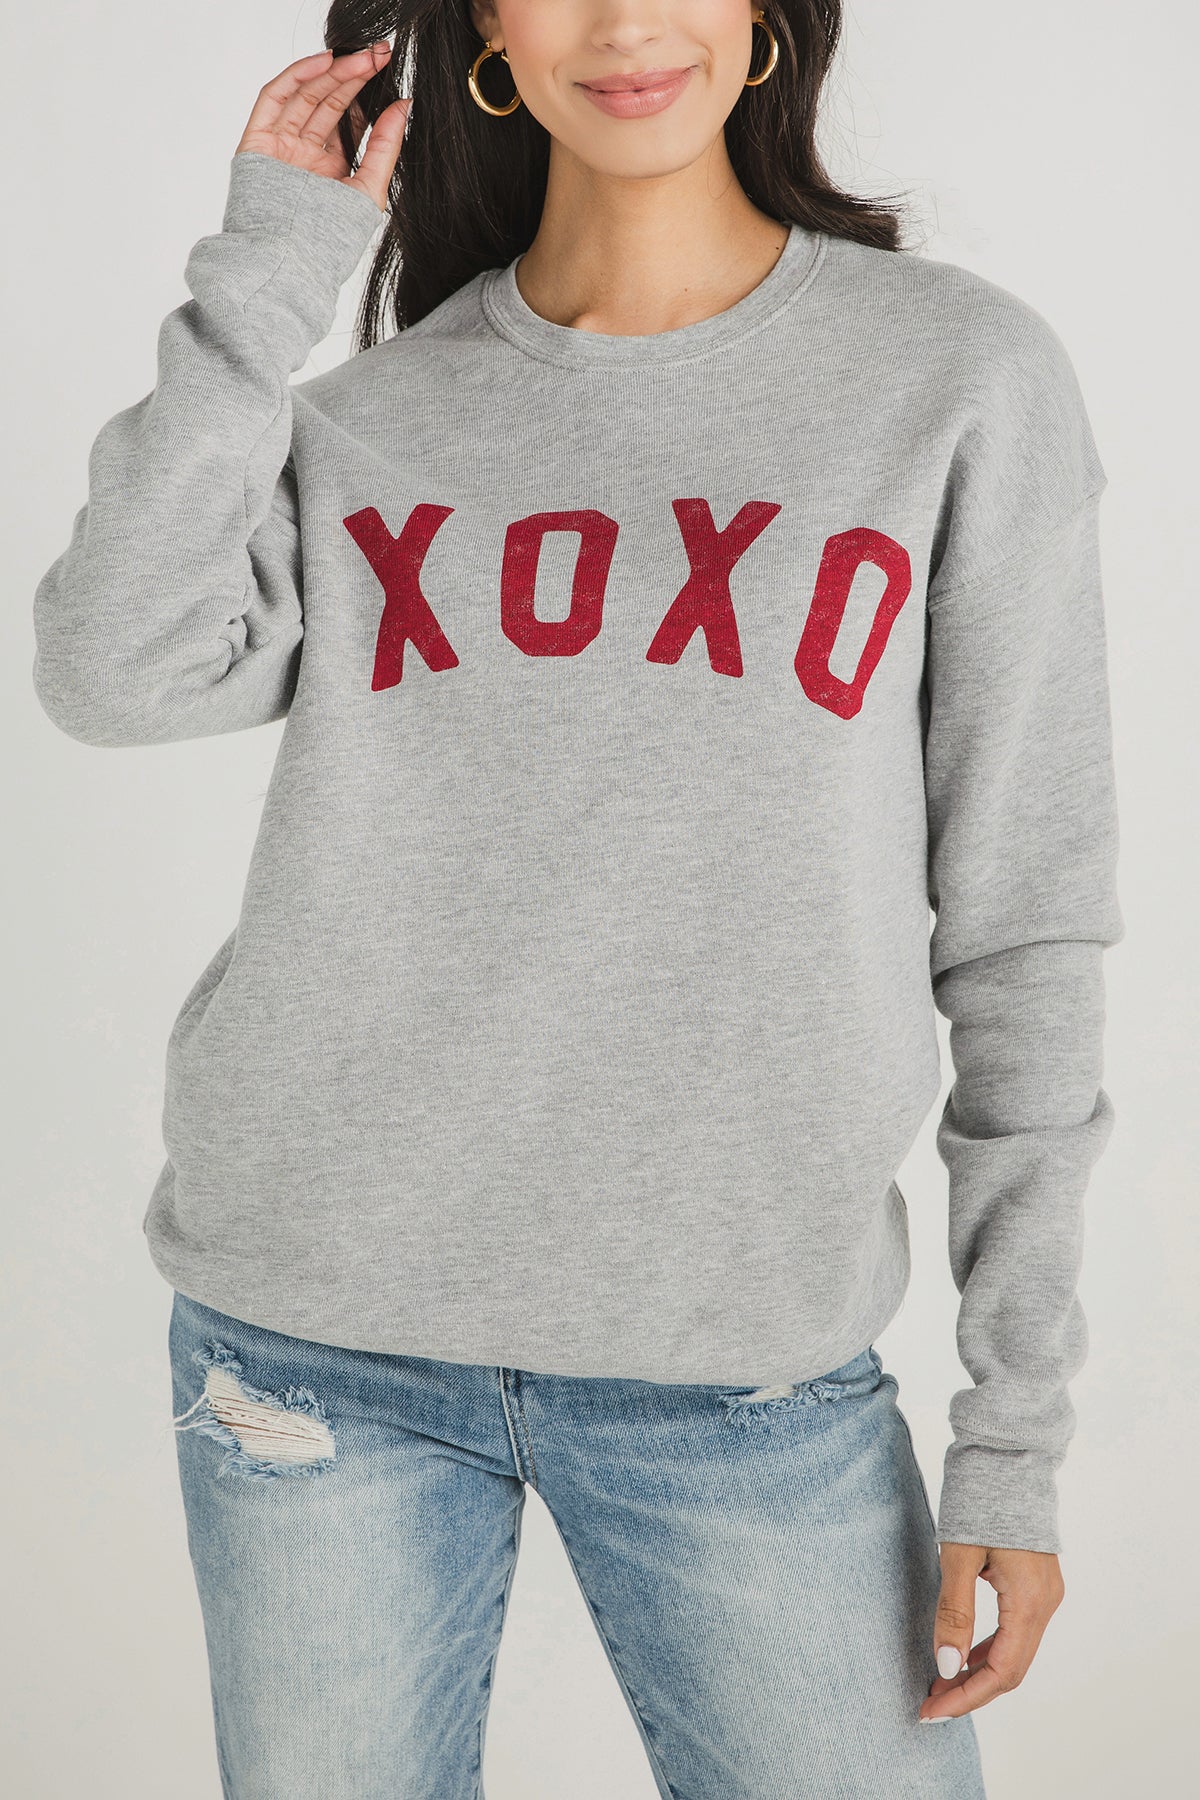 Oat Collective XOXO Sweatshirt